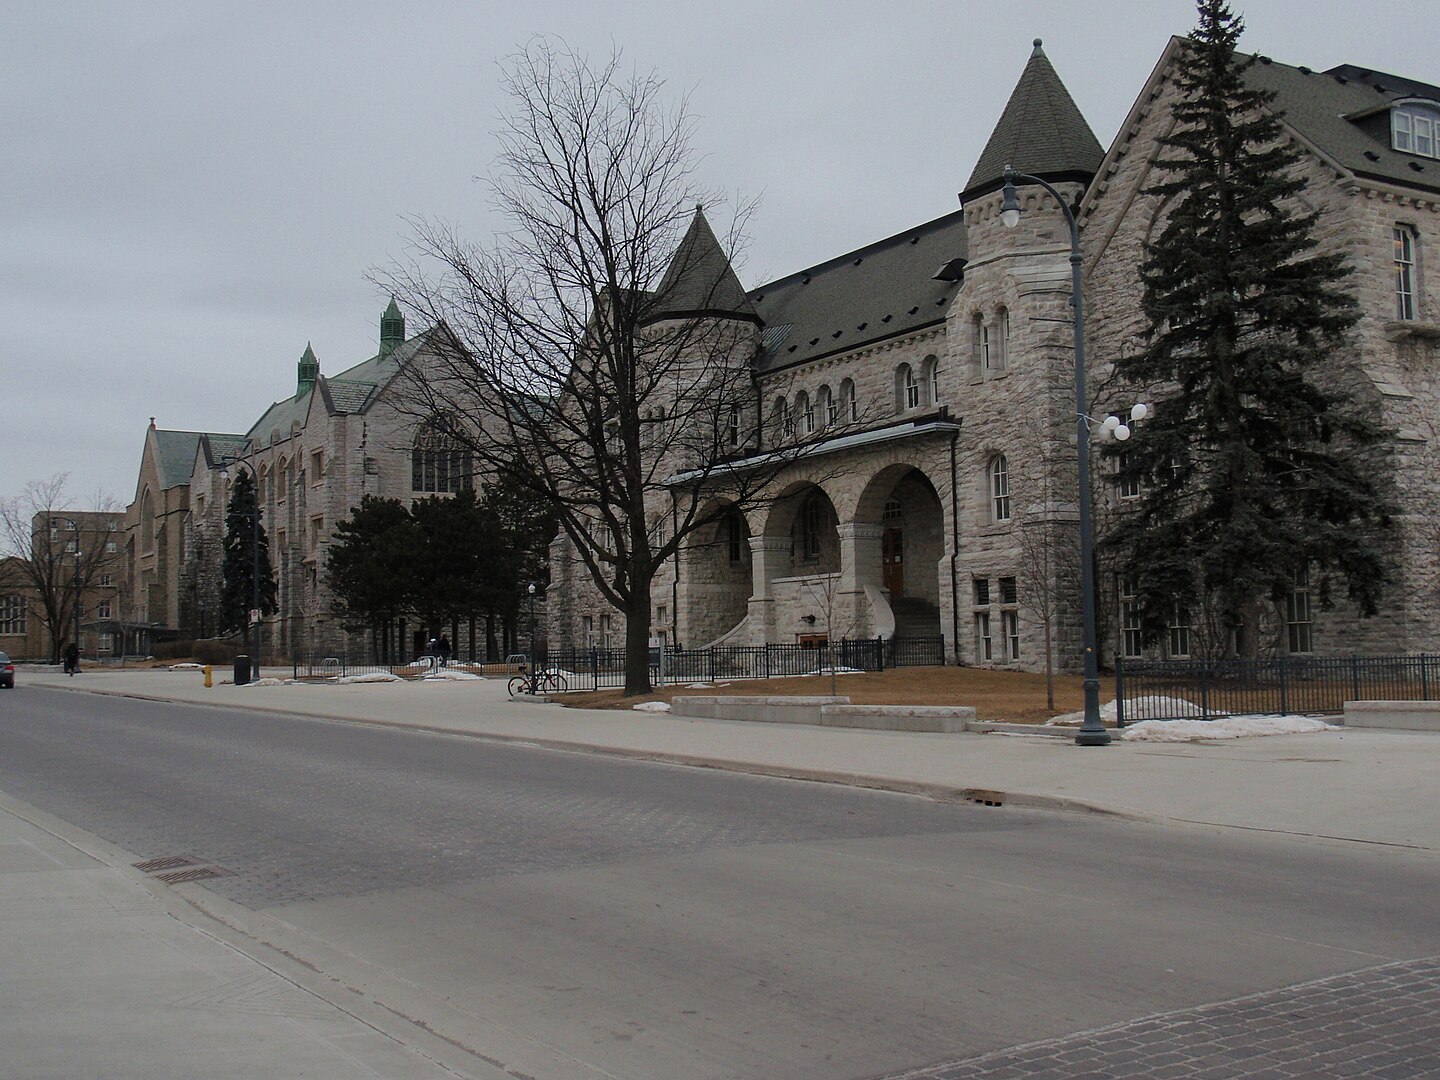 Queen's University in Kingston, Ontario